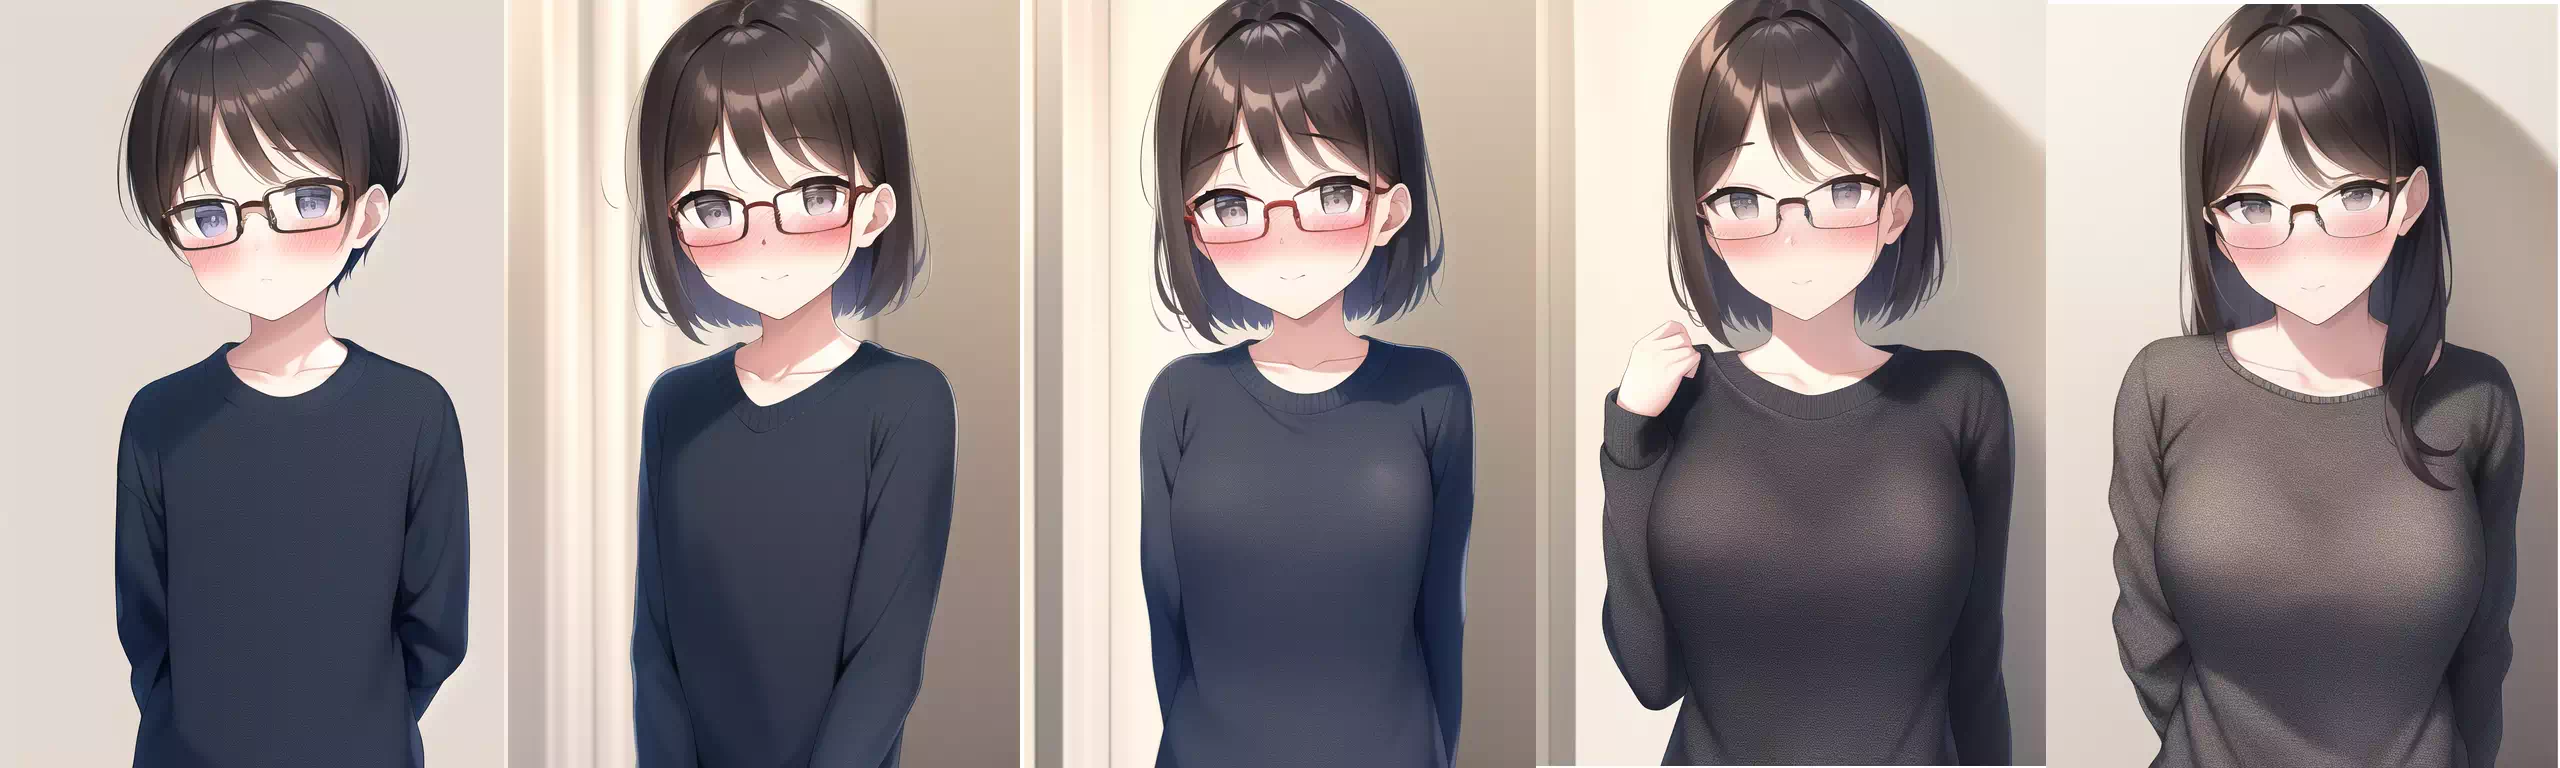 眼鏡少年→眼鏡お姉さんTSF AI